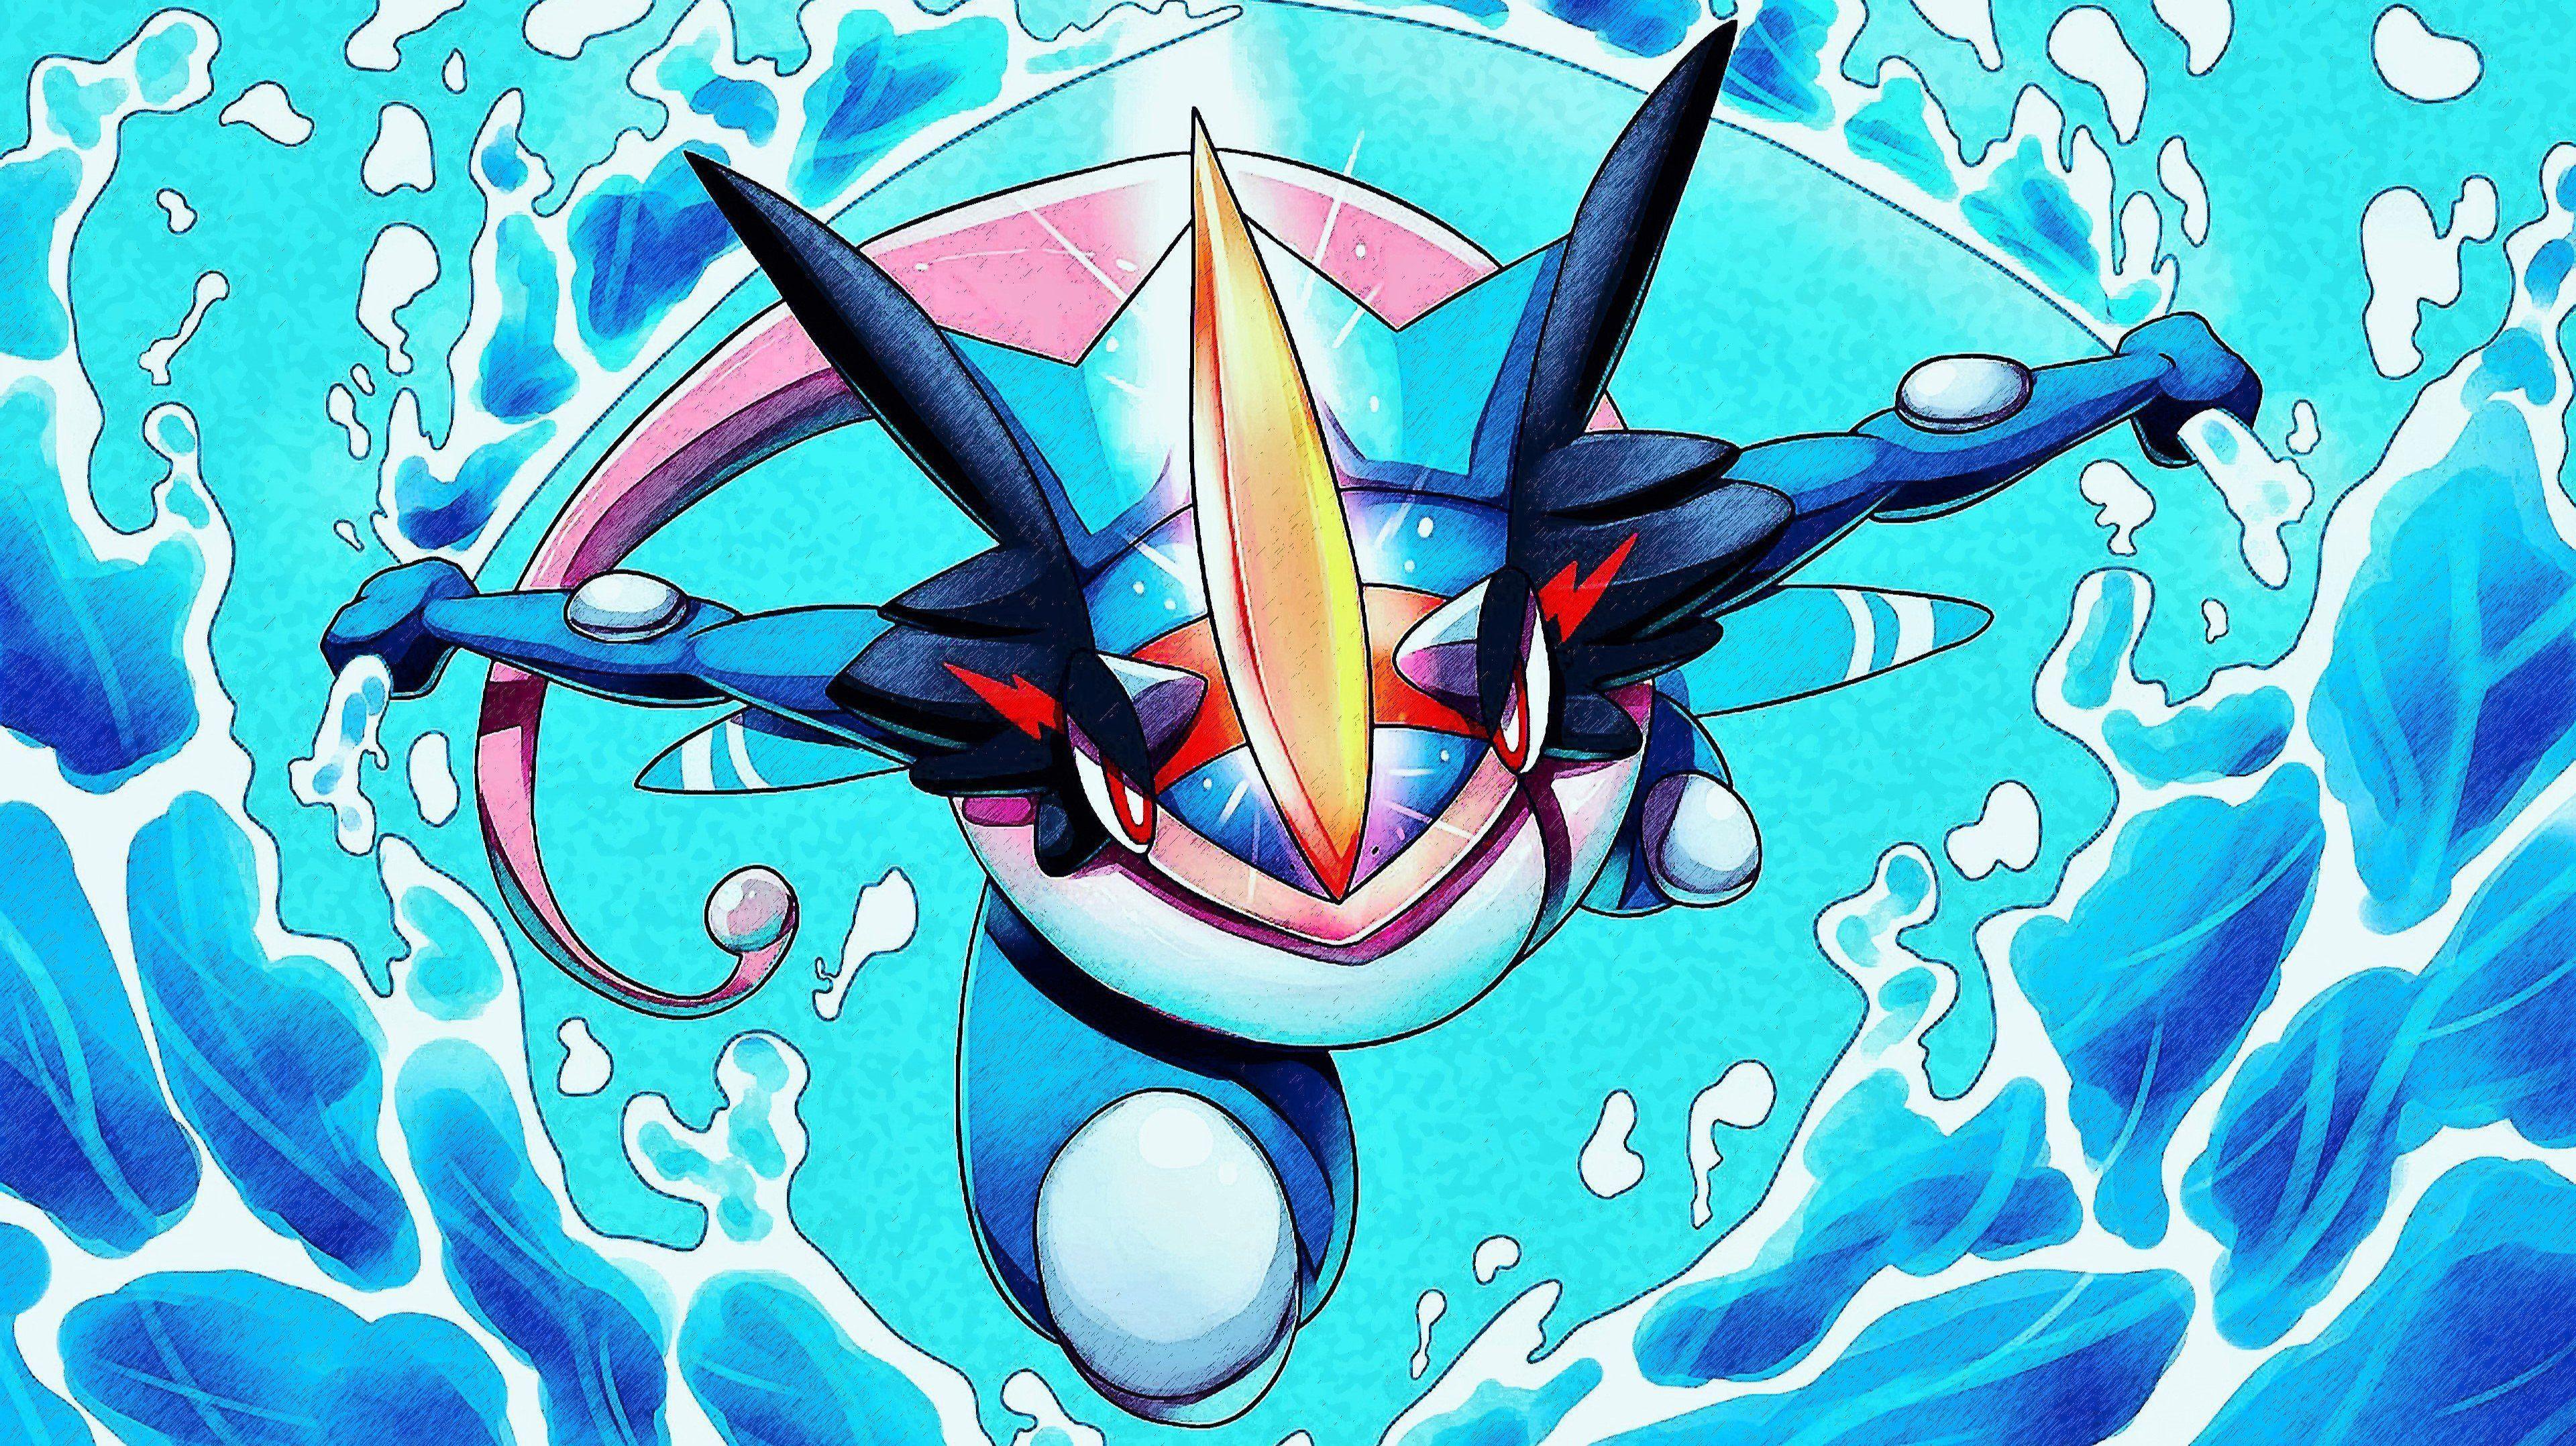 Shiny Ash-Greninja! [1440x2560] : r/pokemon